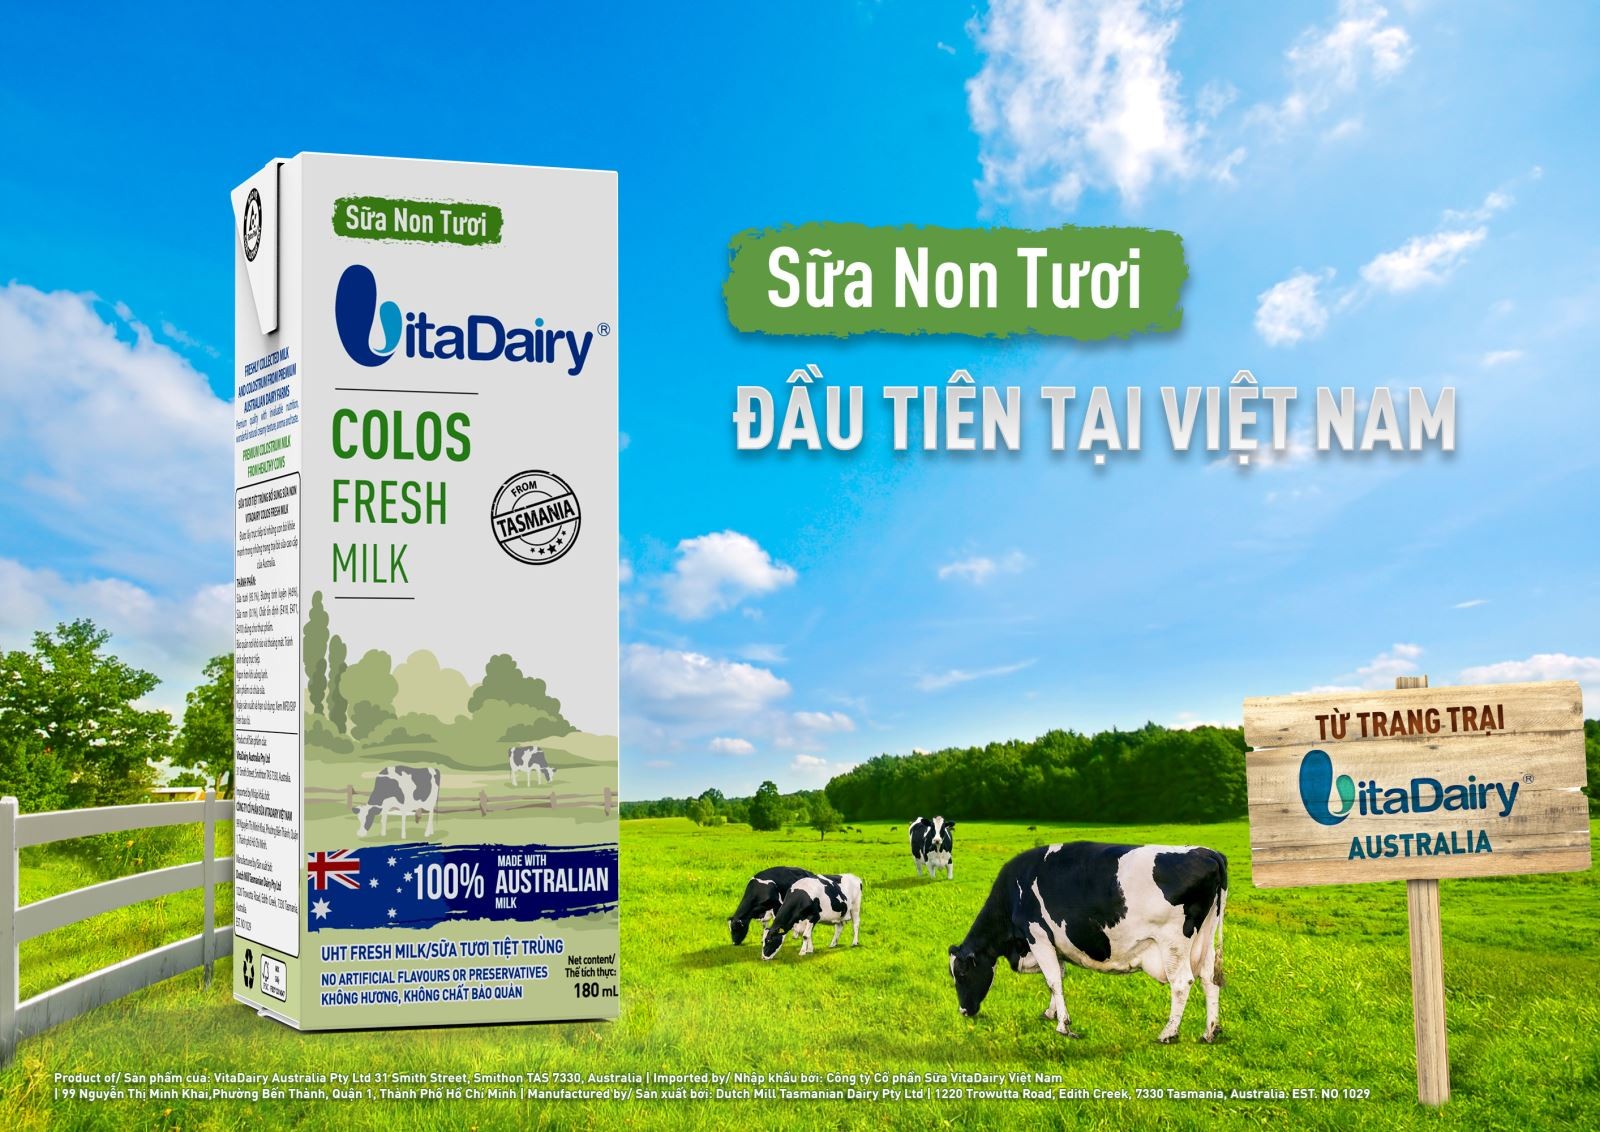 
Vita Dairy&nbsp;mới cho ra mắt sản phẩm sữa non tươi Colos Fresh Milk - đánh dấu cột mốc lấn sân sang phân khúc sữa nước và trở thành một trong những đối thủ cạnh tranh đáng gờm của Vinamilk trên thị trường sữa nước
